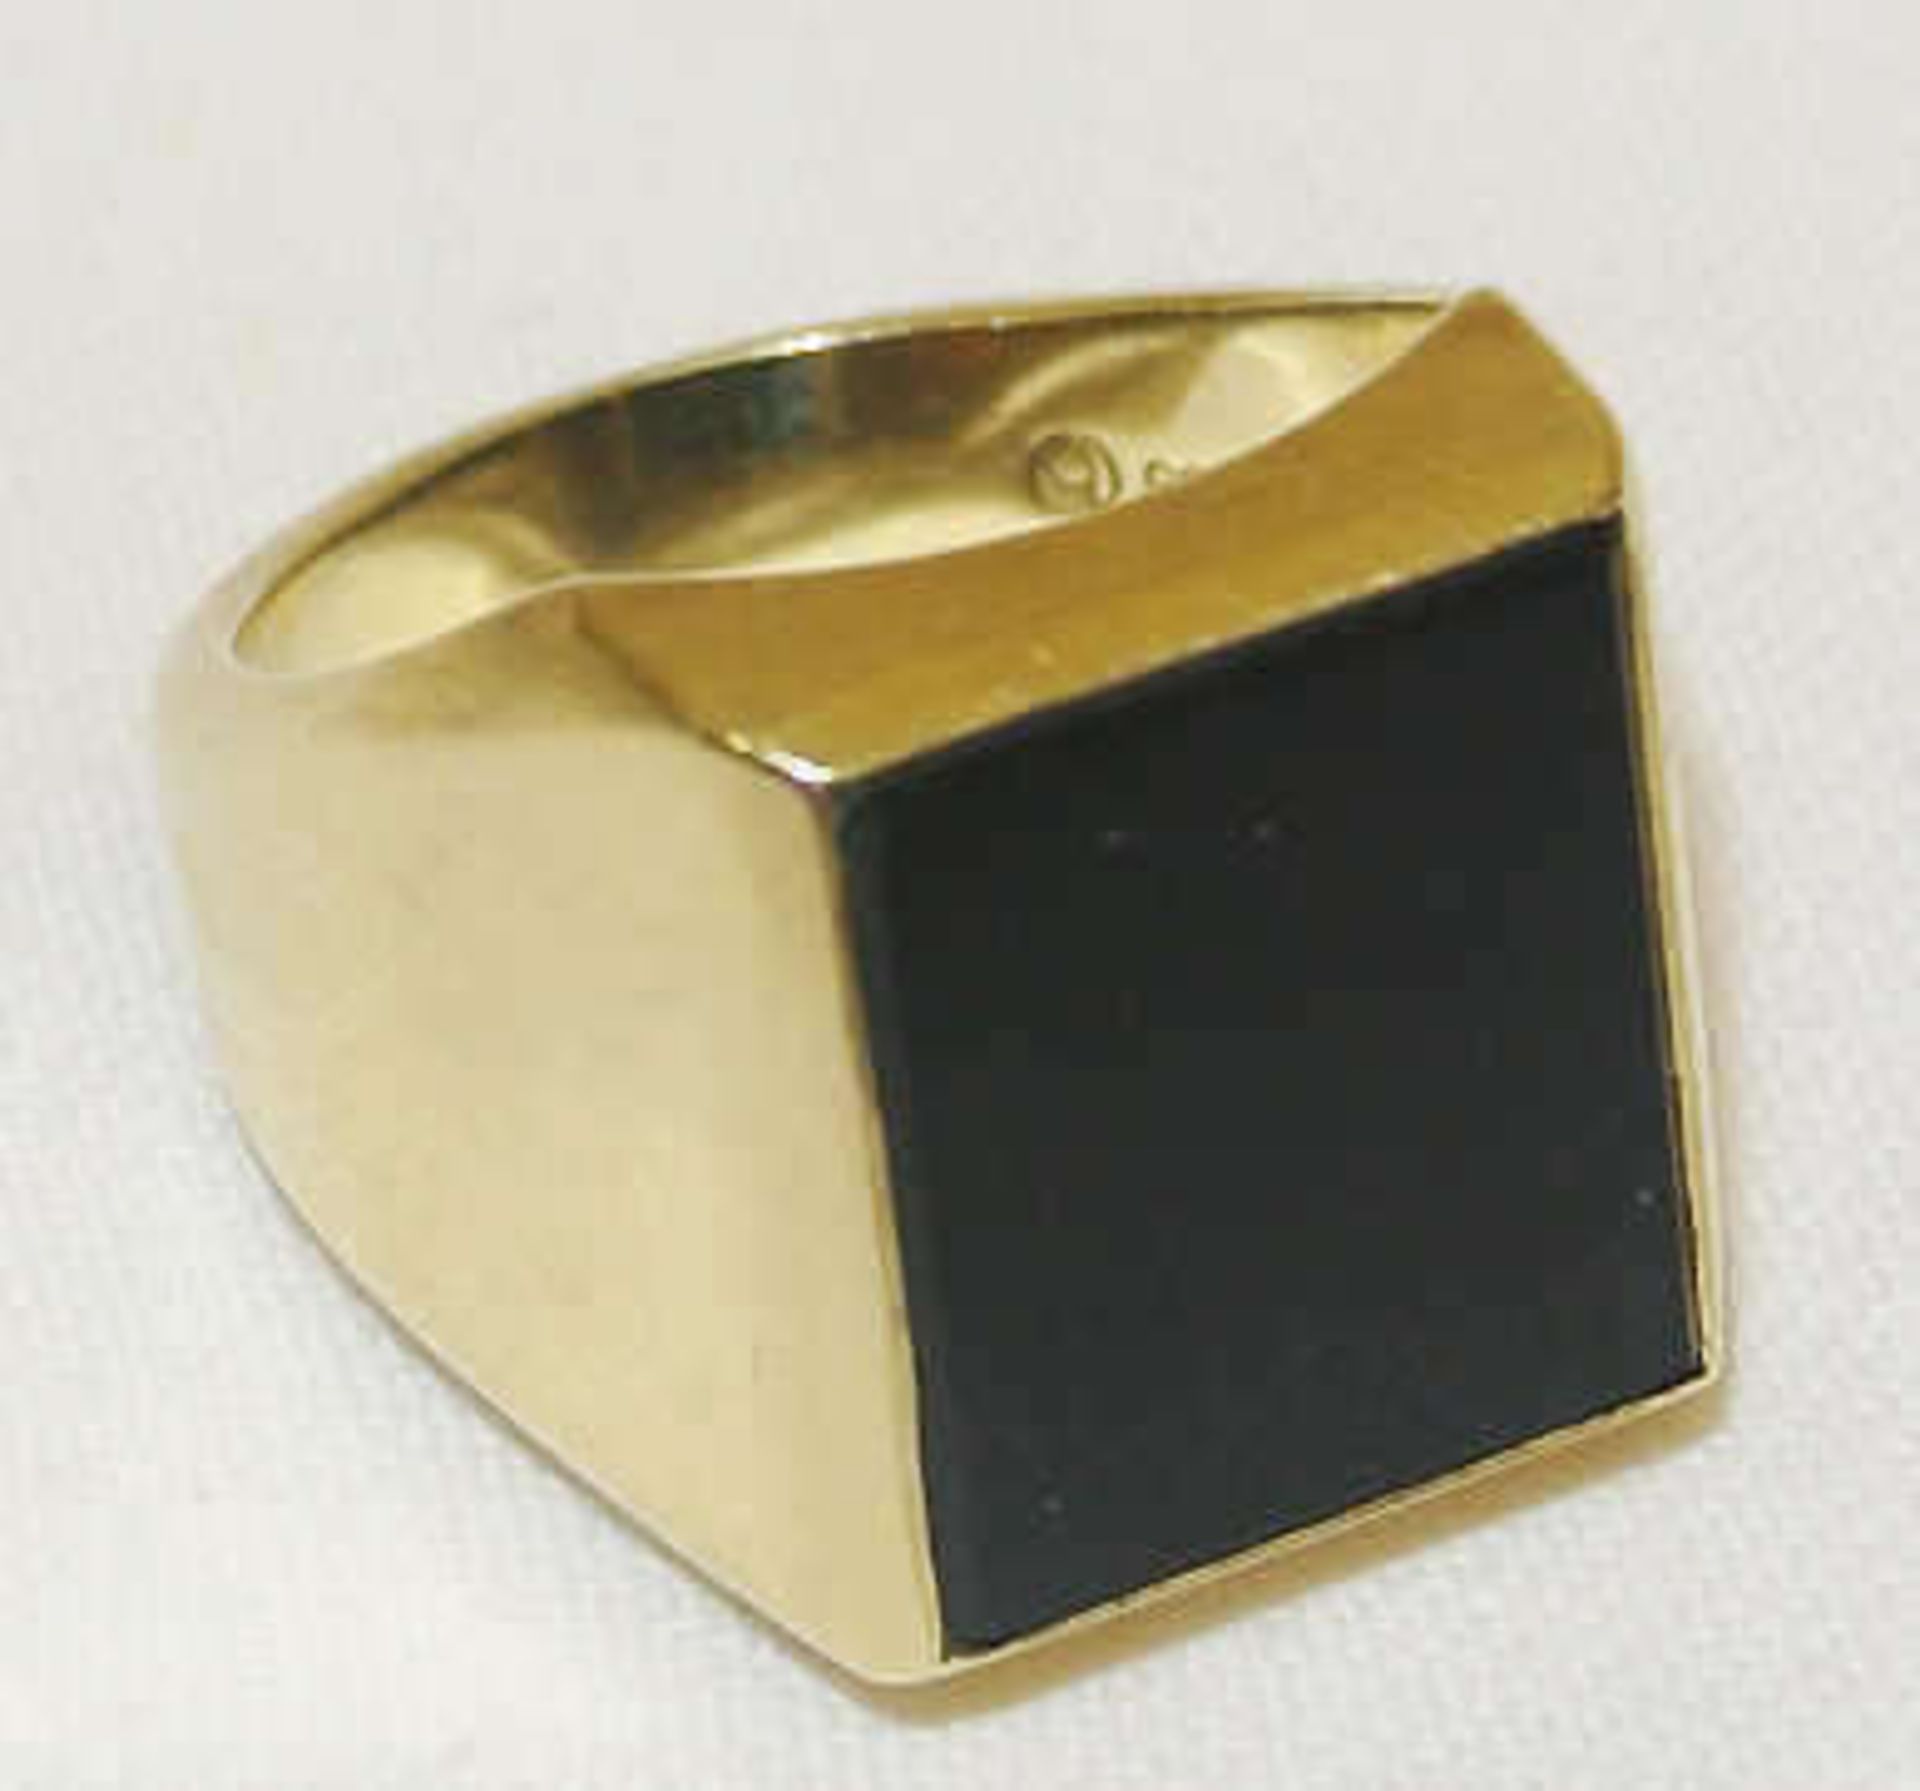 Herrenring, 585er Gelbgold, mit Onyx. Ringgröße 60, Gewicht ca. 12,9 gr Men's ring, 585er yellow